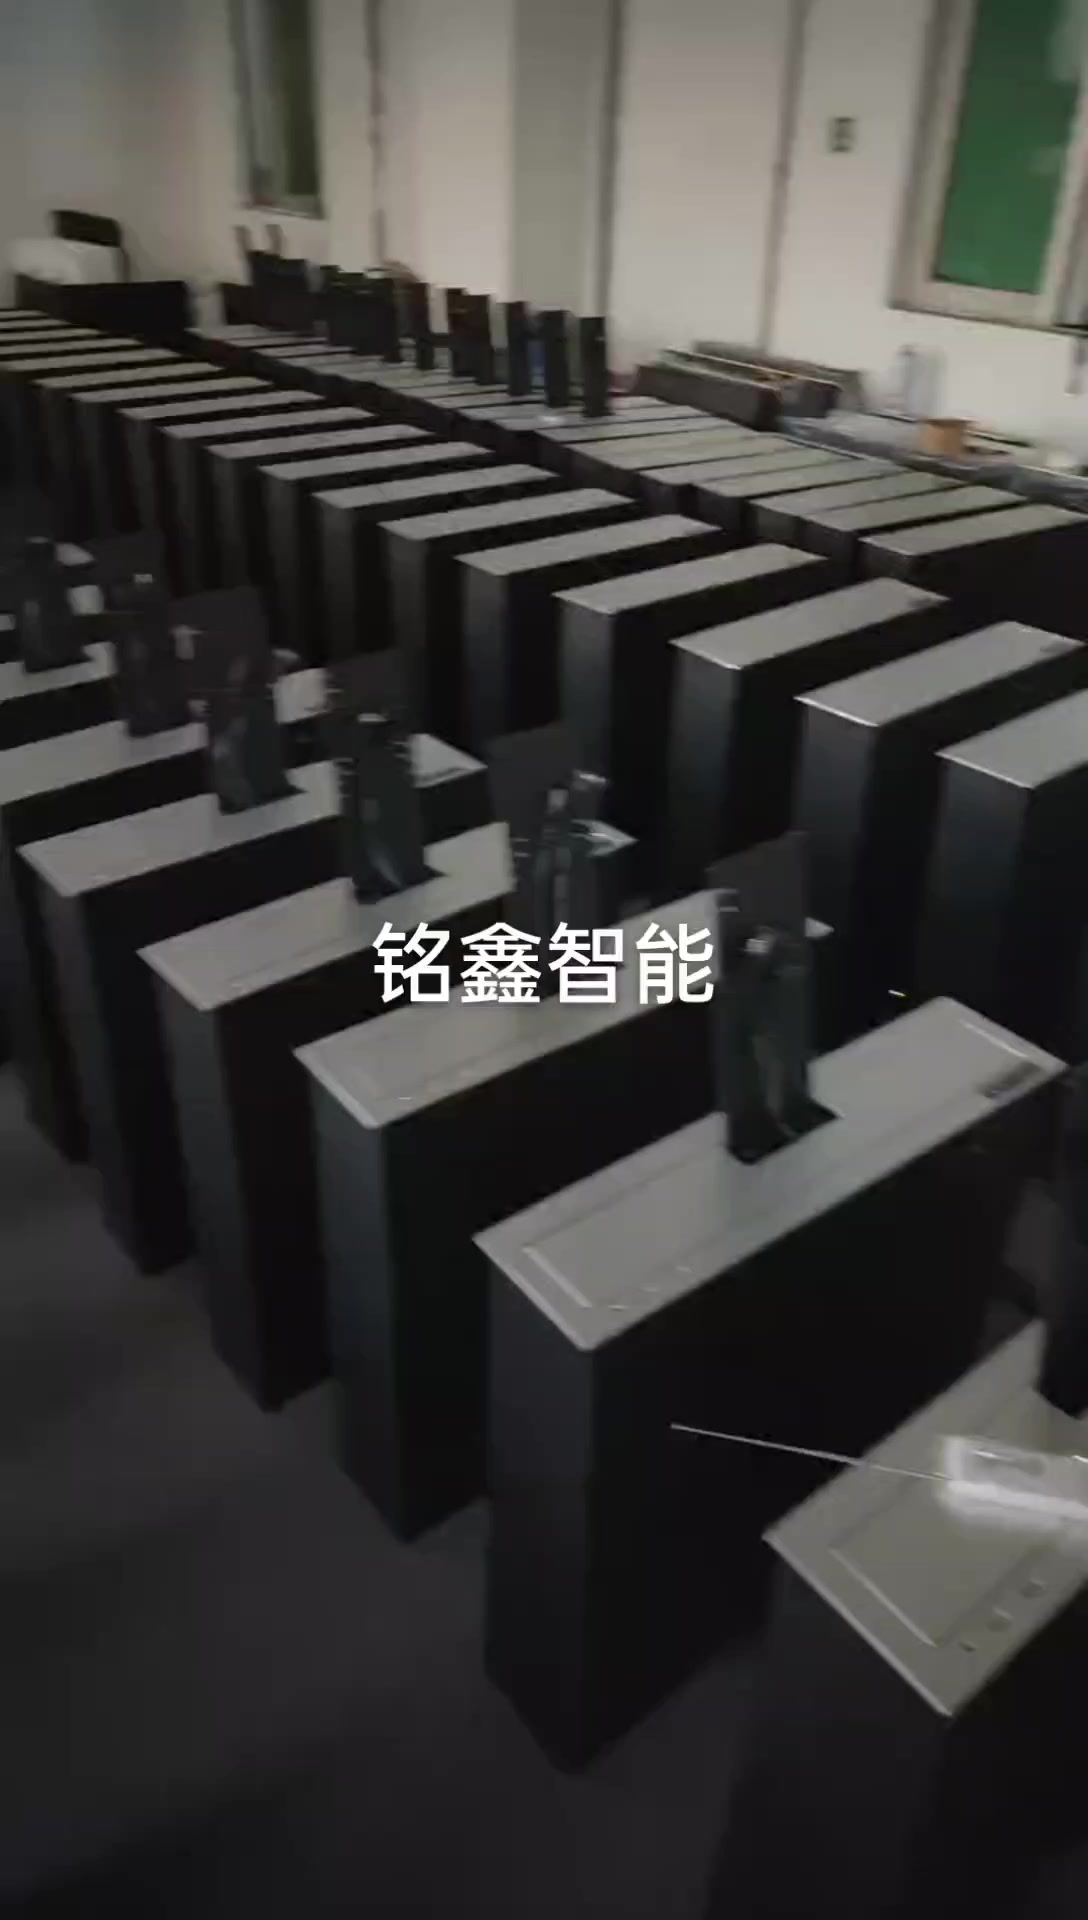 液晶屏显示器升降器-广州铭鑫智能-质量保证